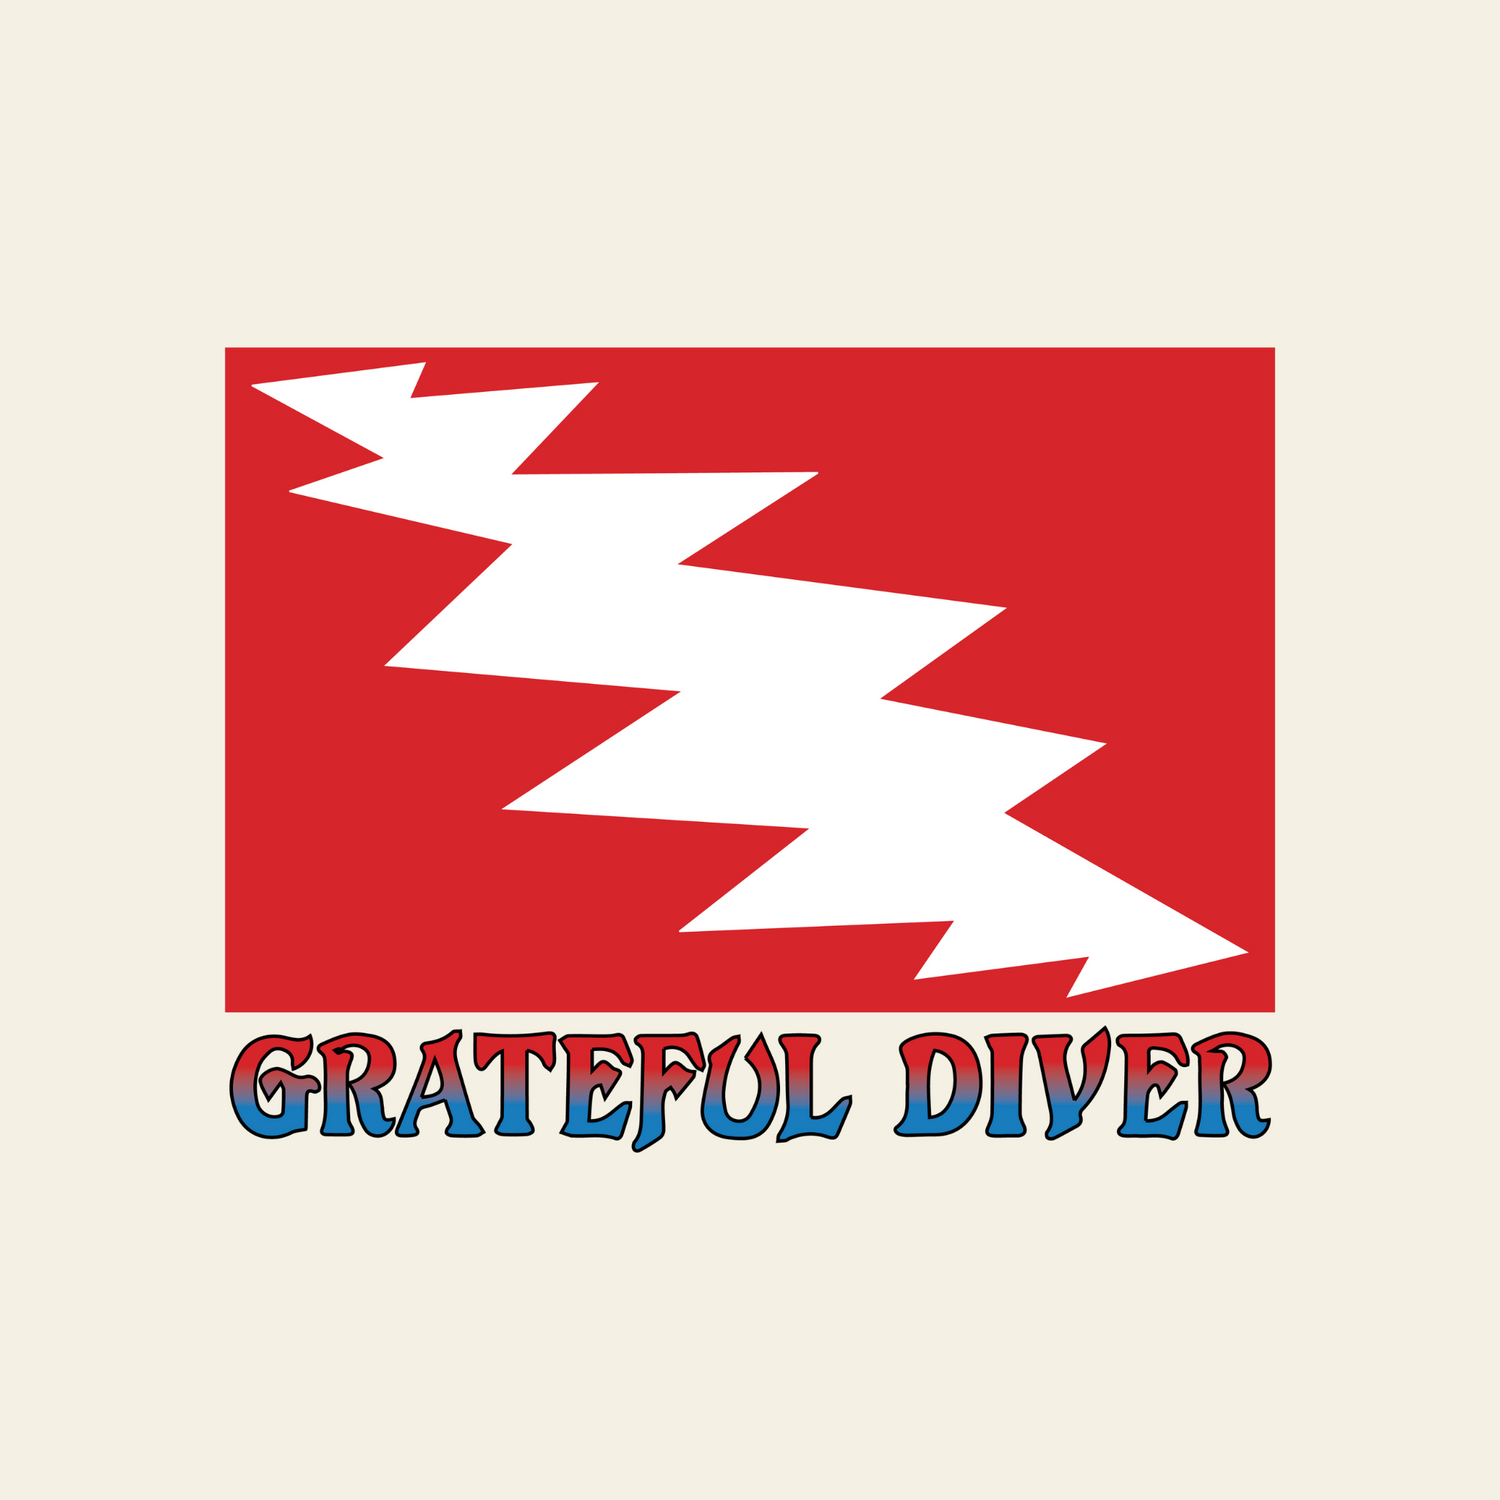 Grateful Diver dive flag logo